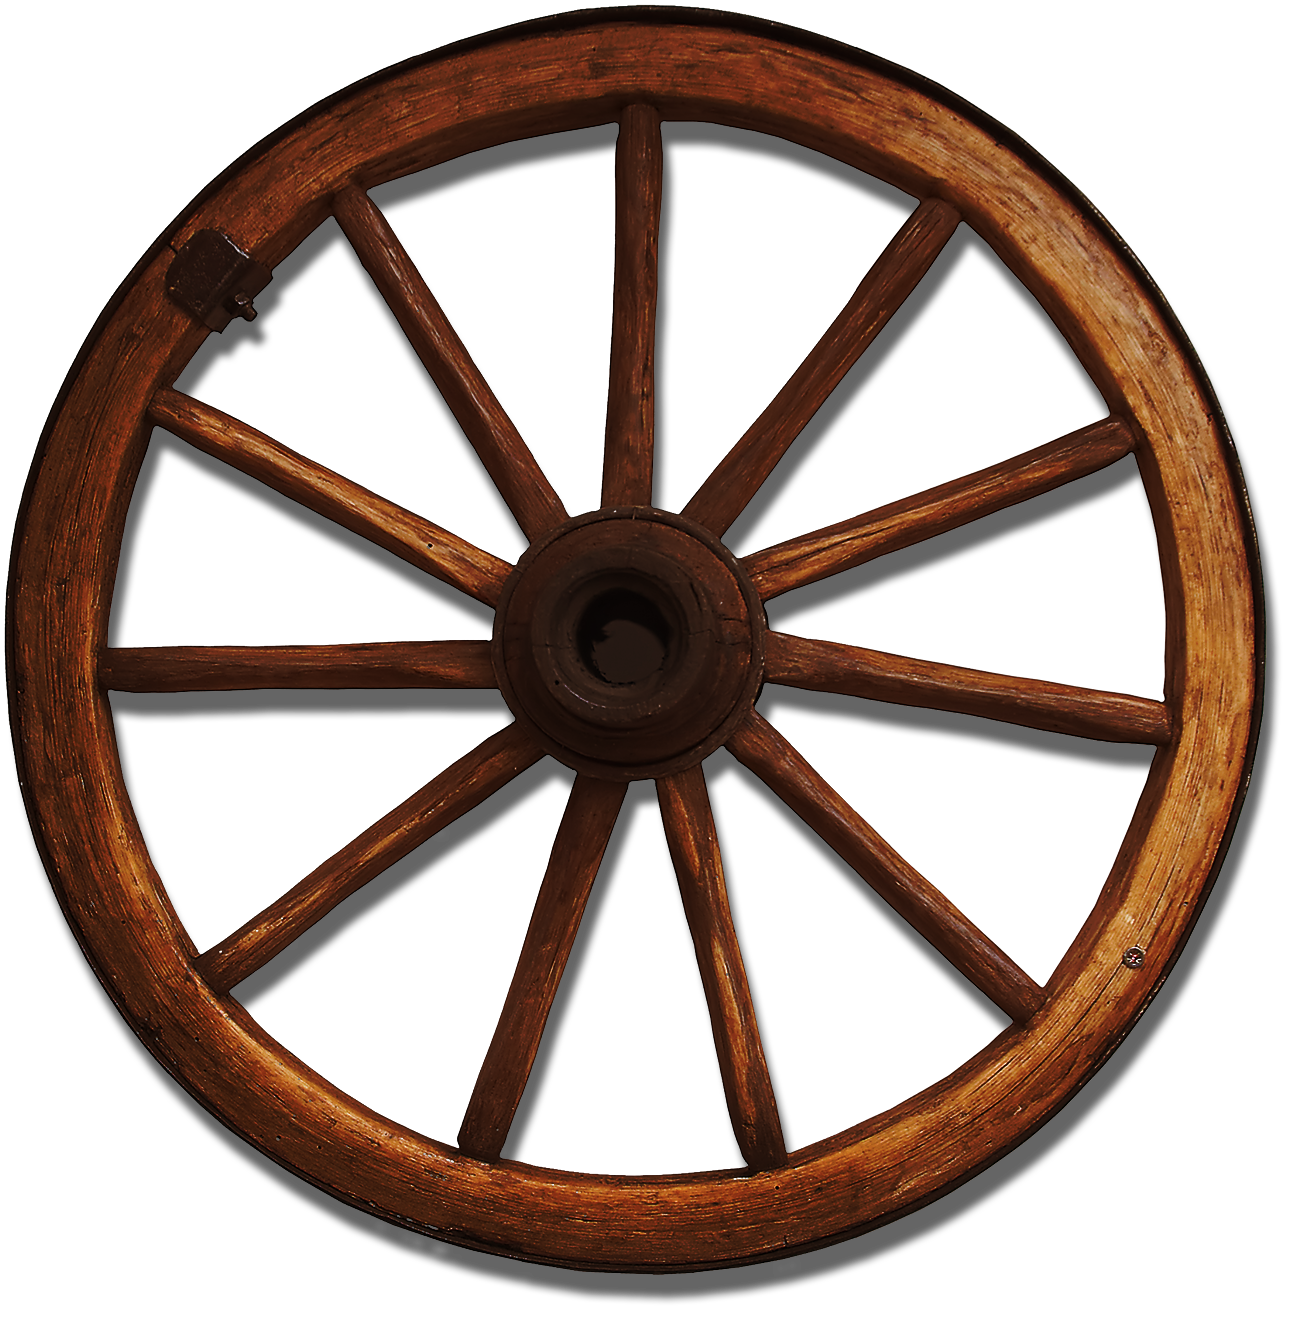 Immagine del PNG della ruota del carro